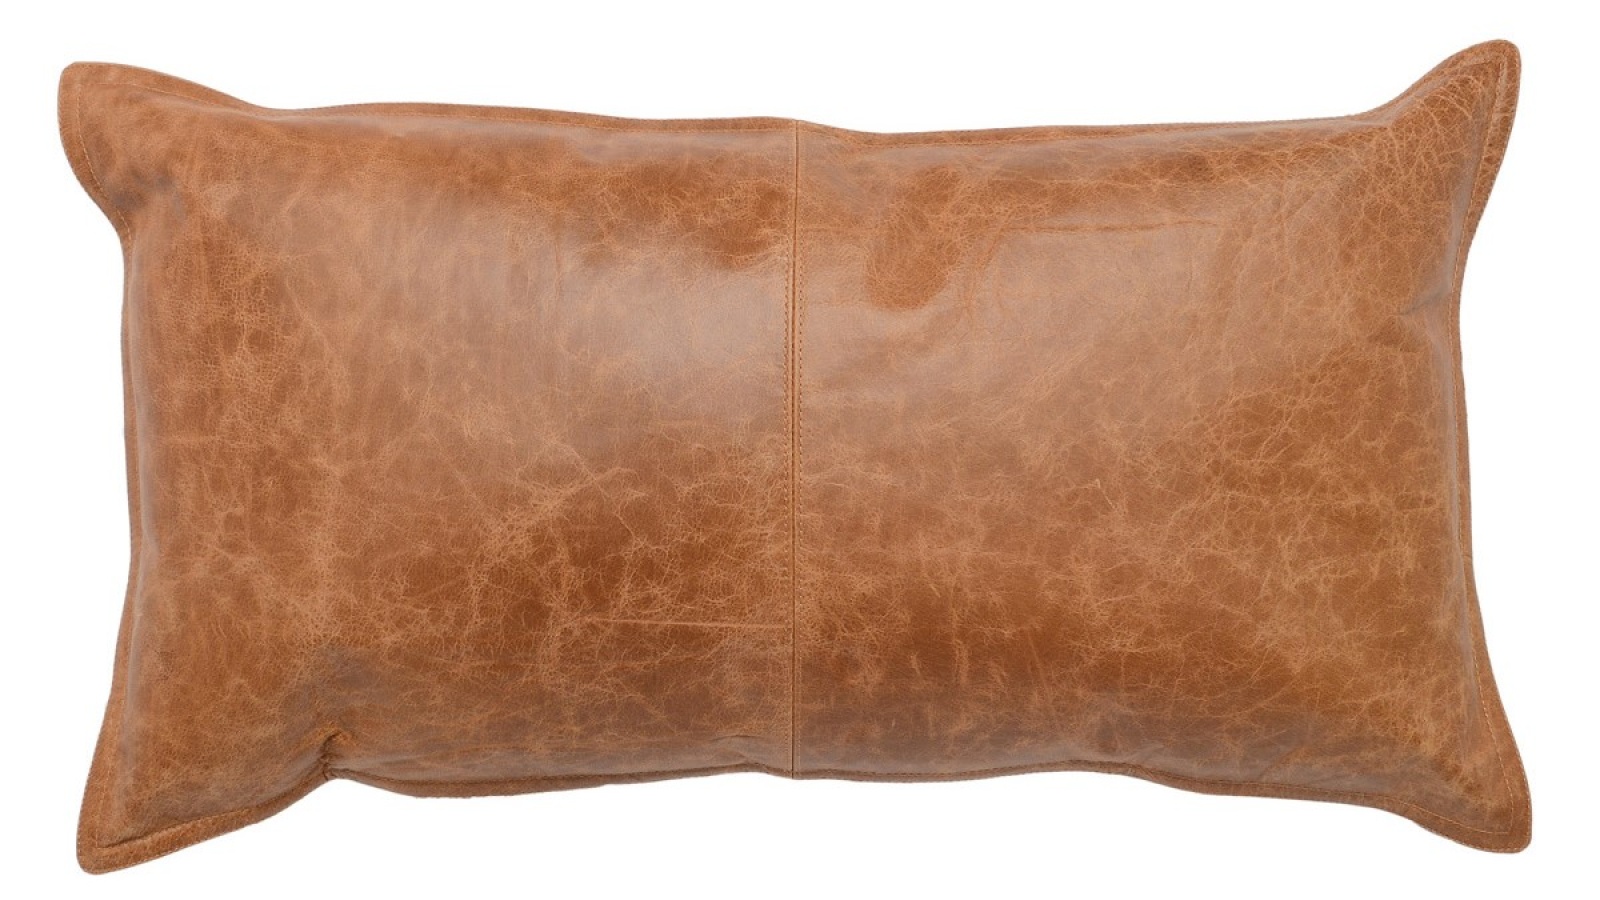 Dumont Chestnut Leather Rectangular Pillow